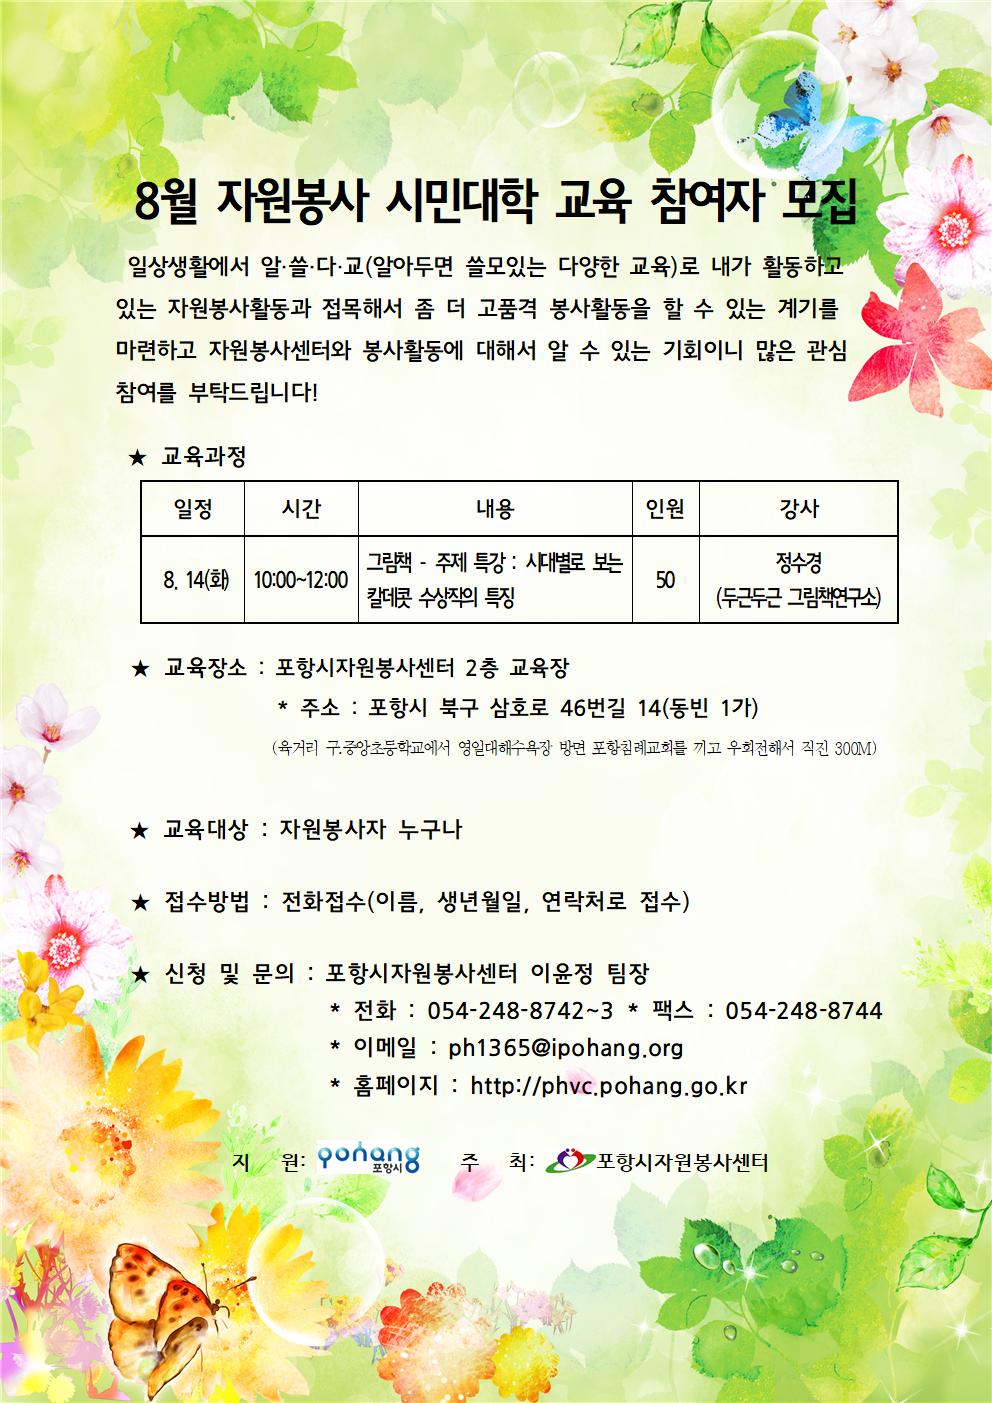 8월 자원봉사 시민대학 홍보문(그림책)